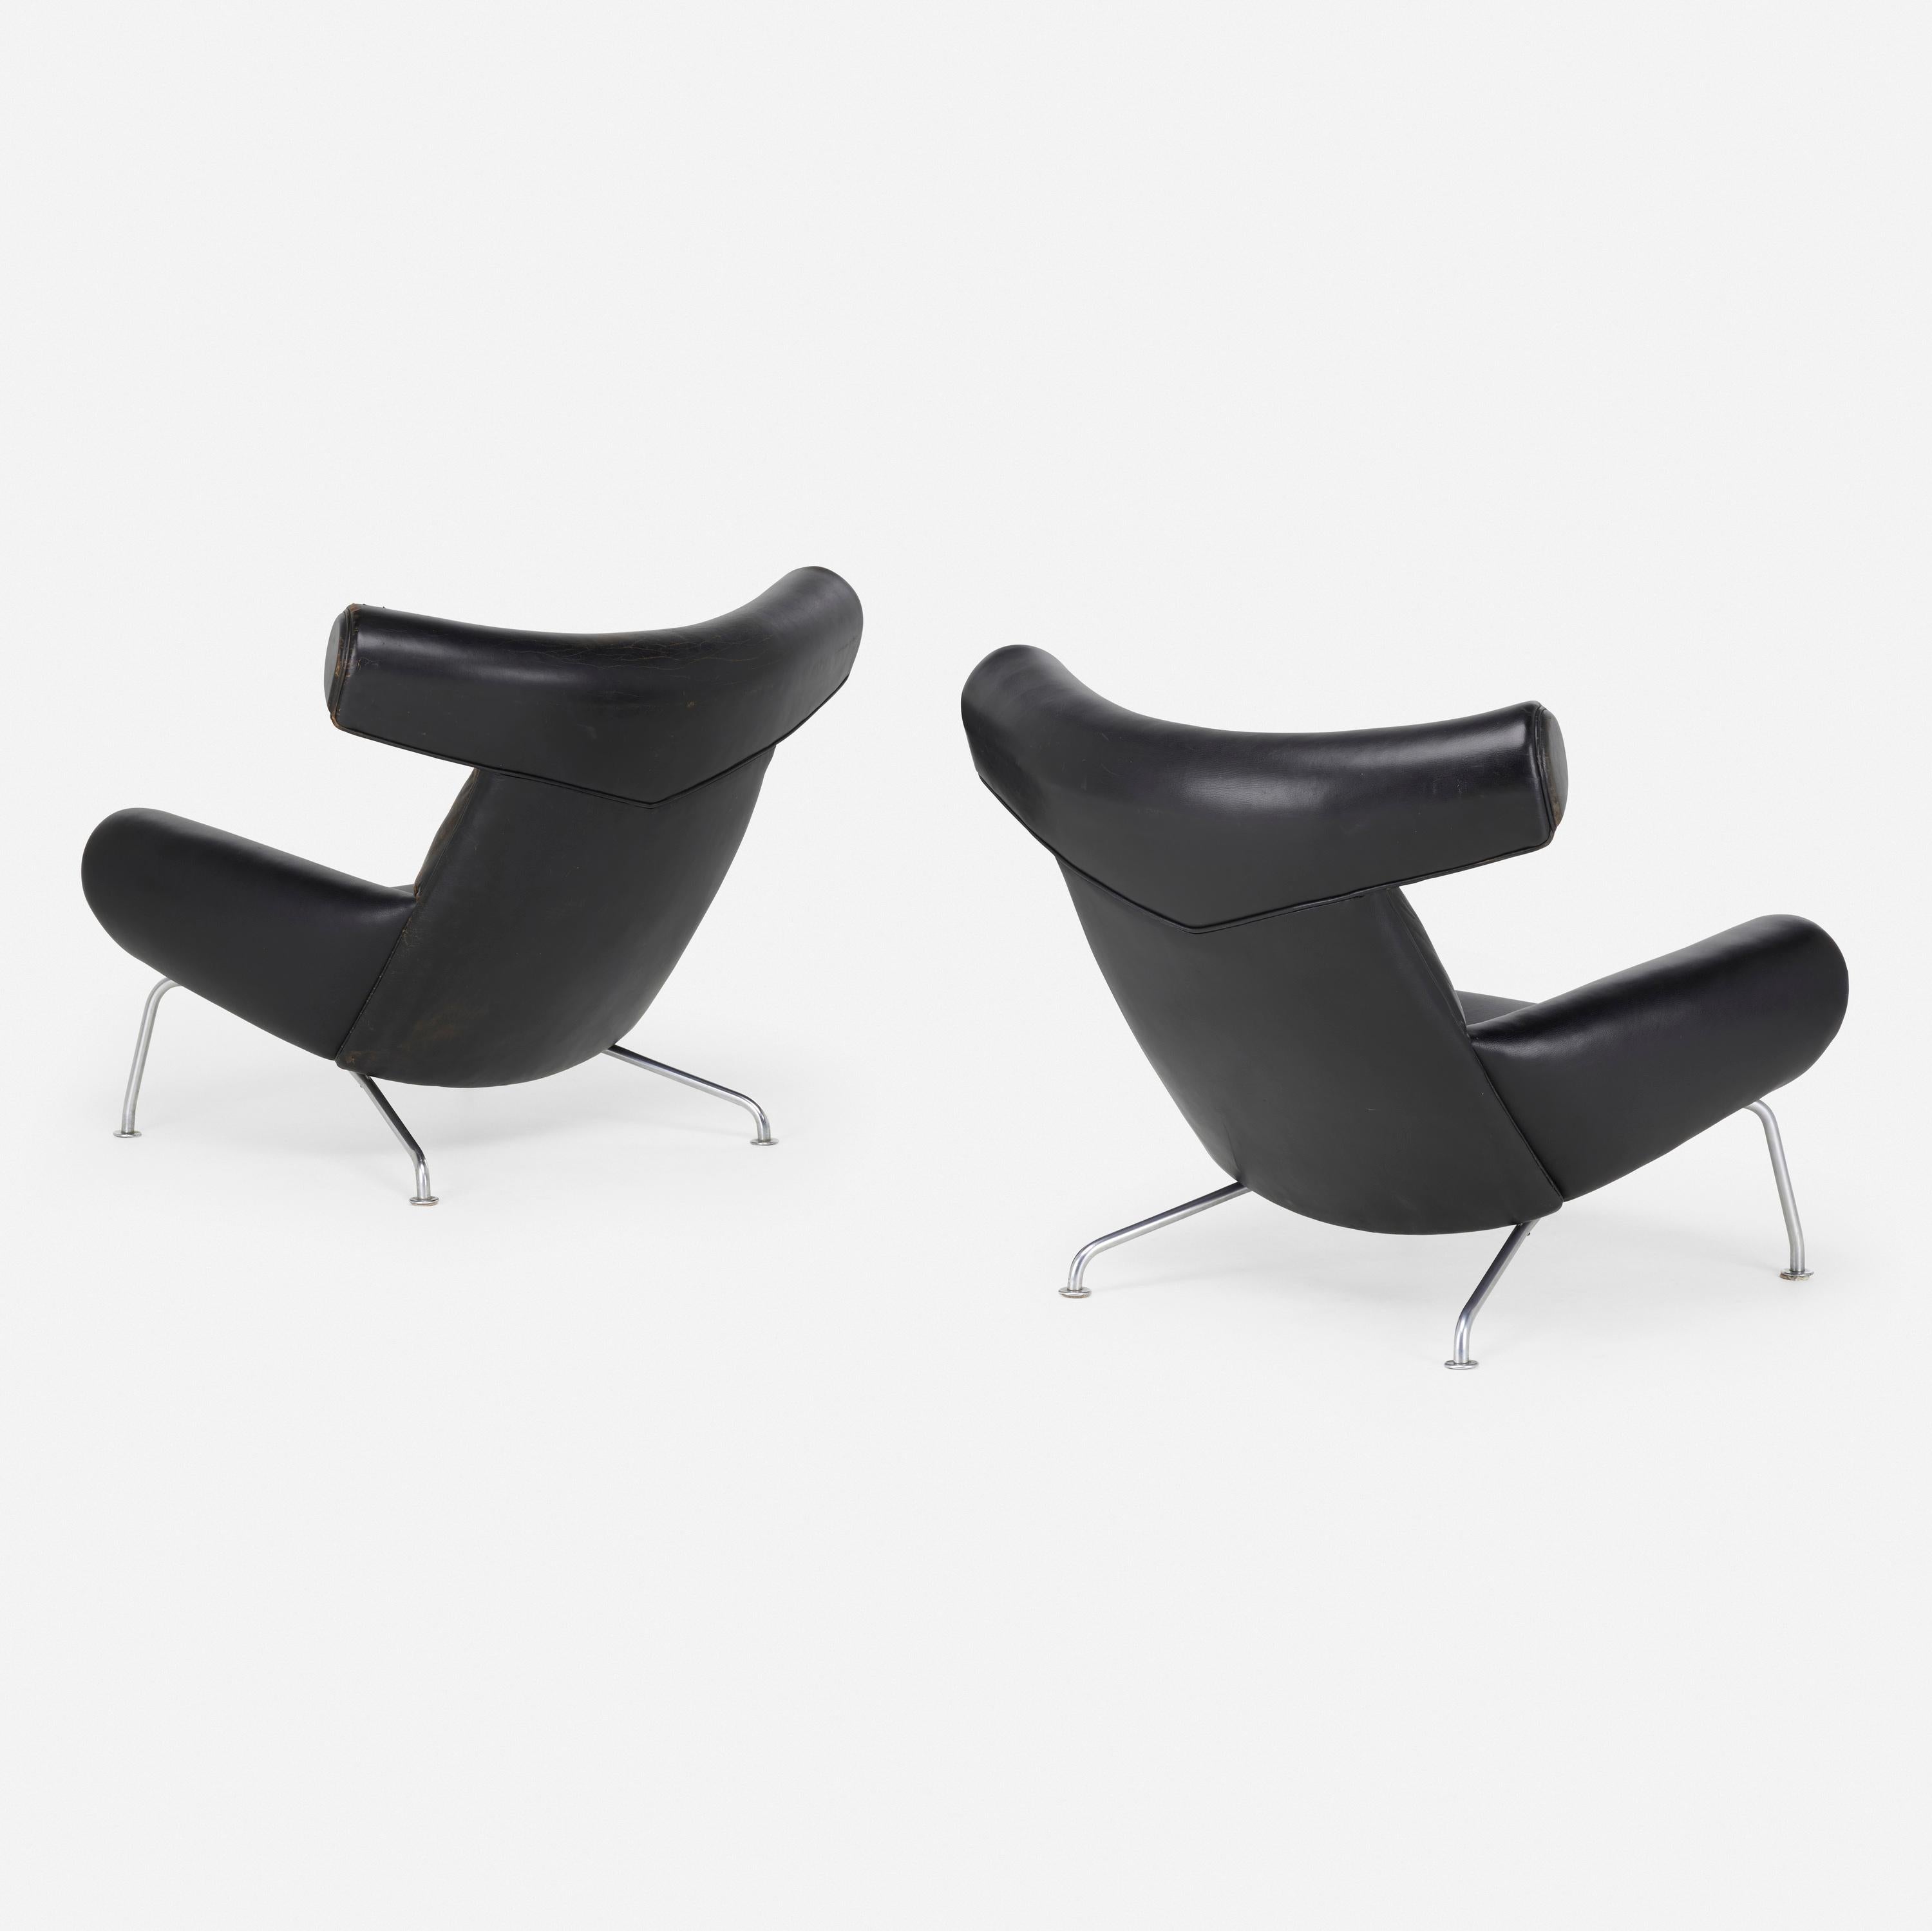 Magnifiques chaises Ox, modèle AP 46 de Hans J. Wegner. A.P. Stolen, Danemark, 1960. Cuir noir et acier chromé mat, avec étiquette du fabricant sur le dessous. Peut être vendu par paire ou à 13 000 dollars l'unité.